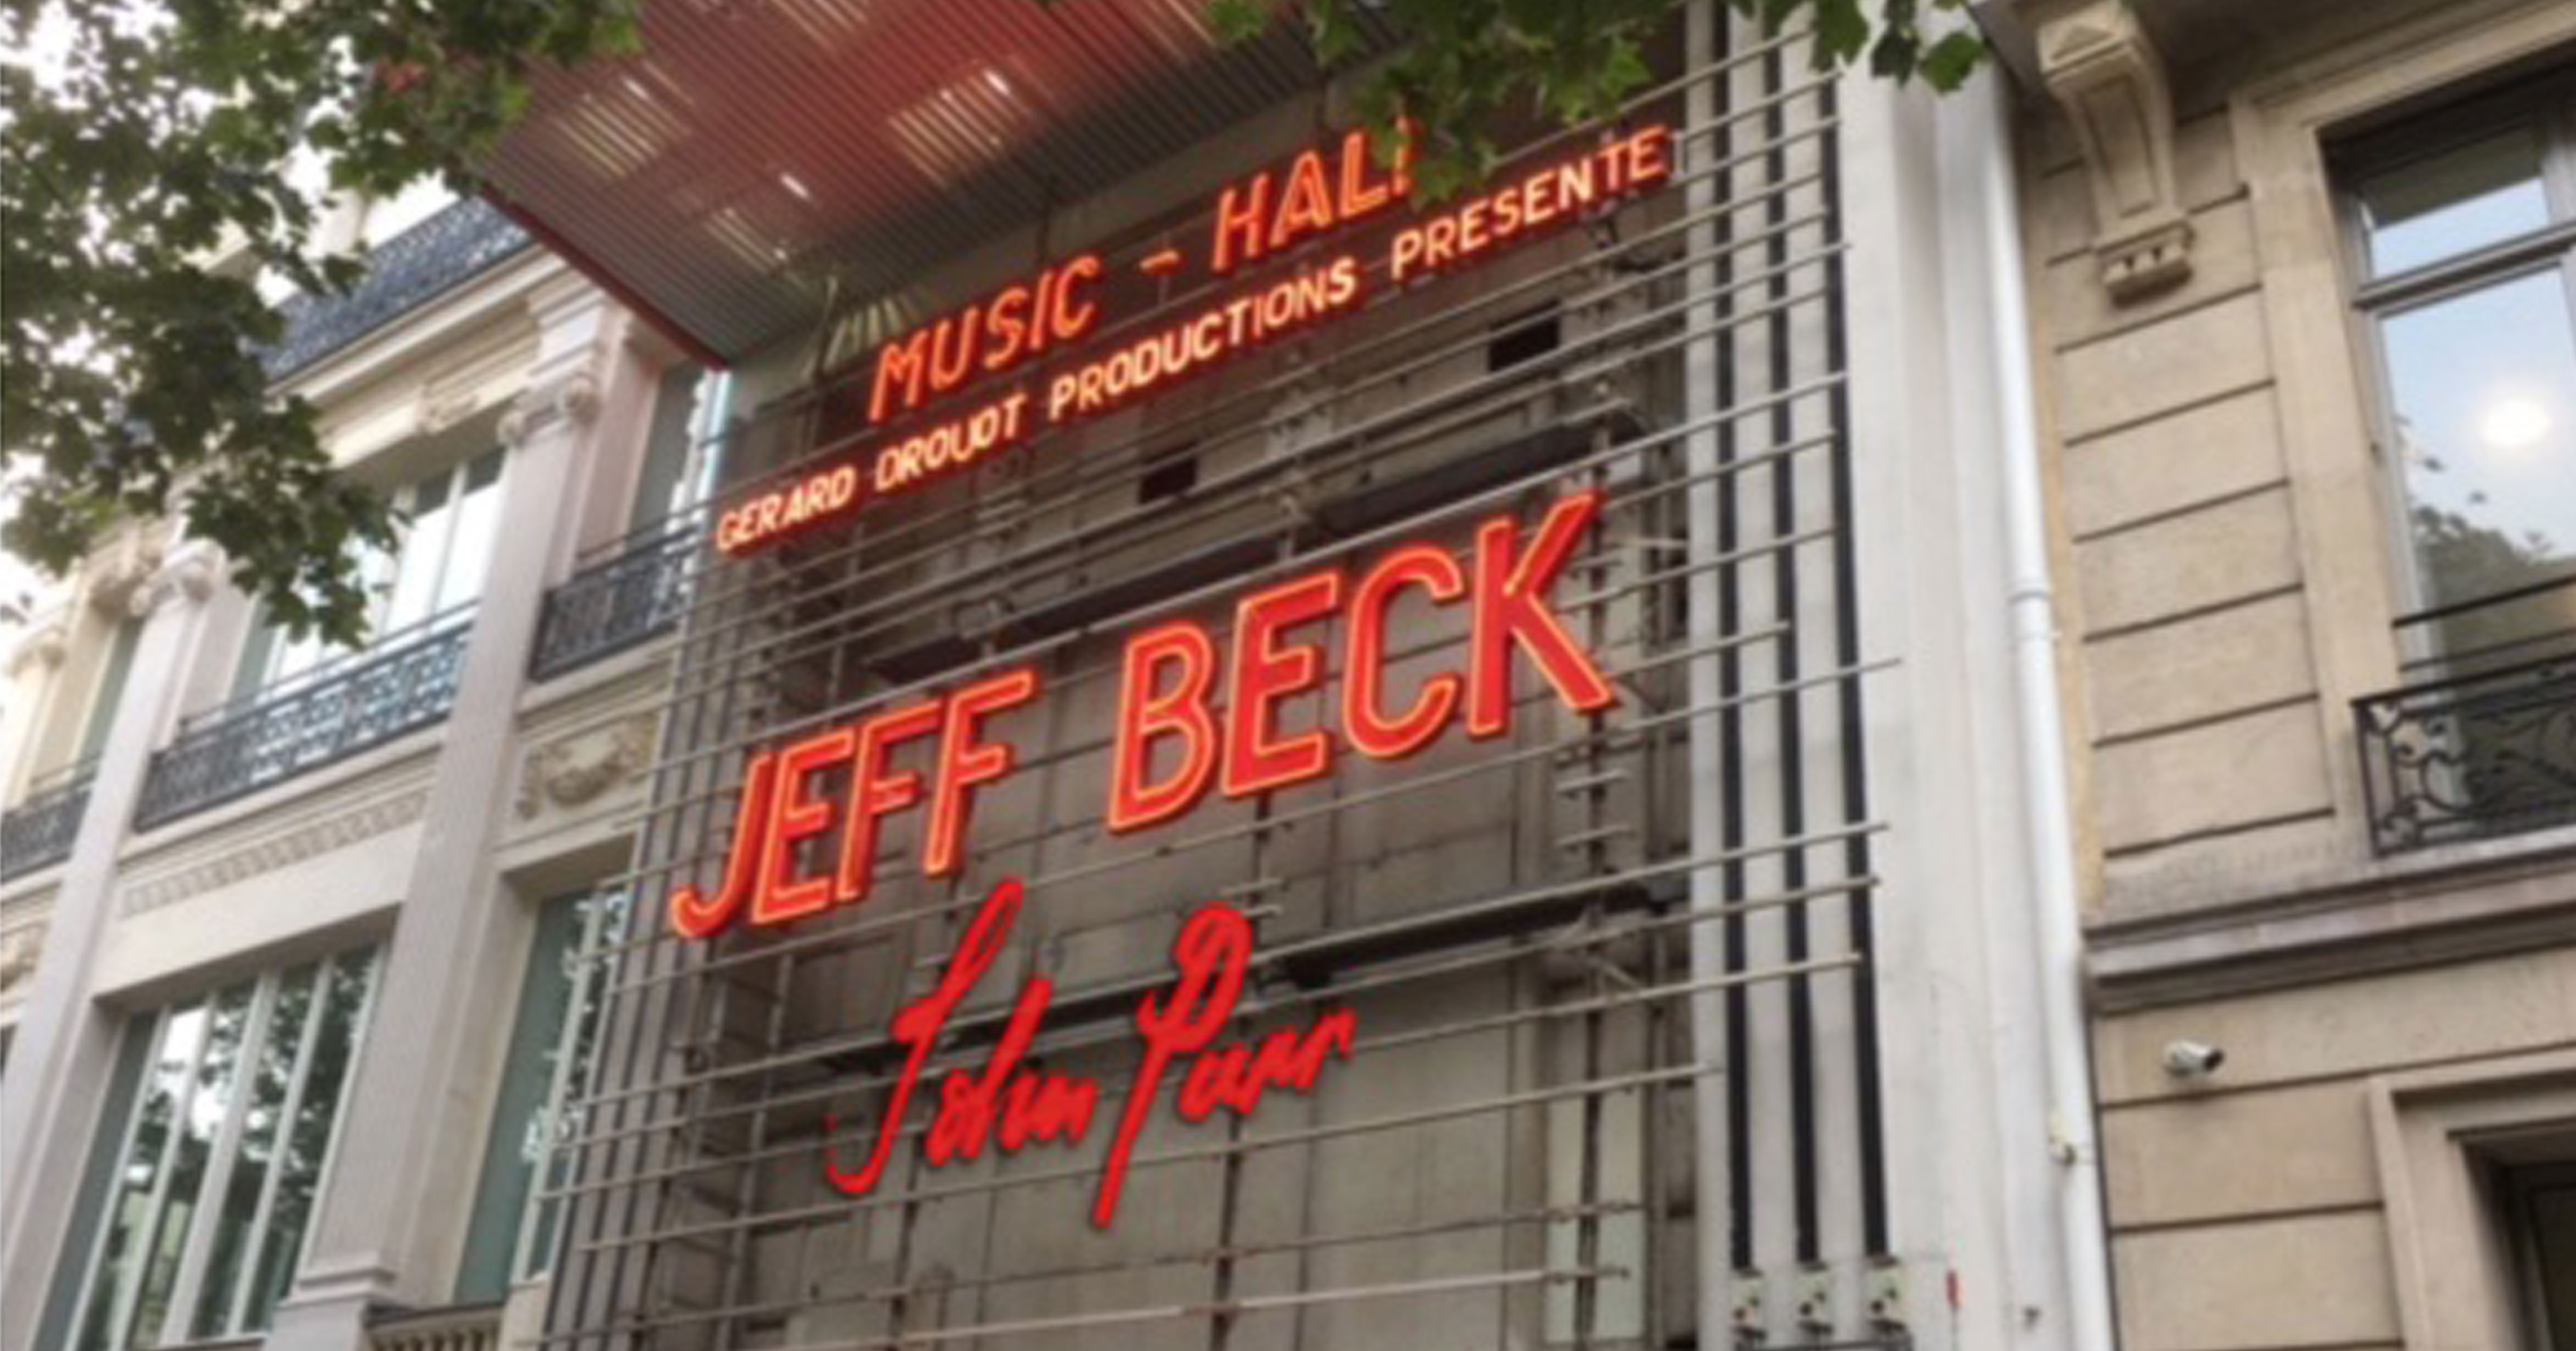 Jeff beck - Ft. John Parr Review